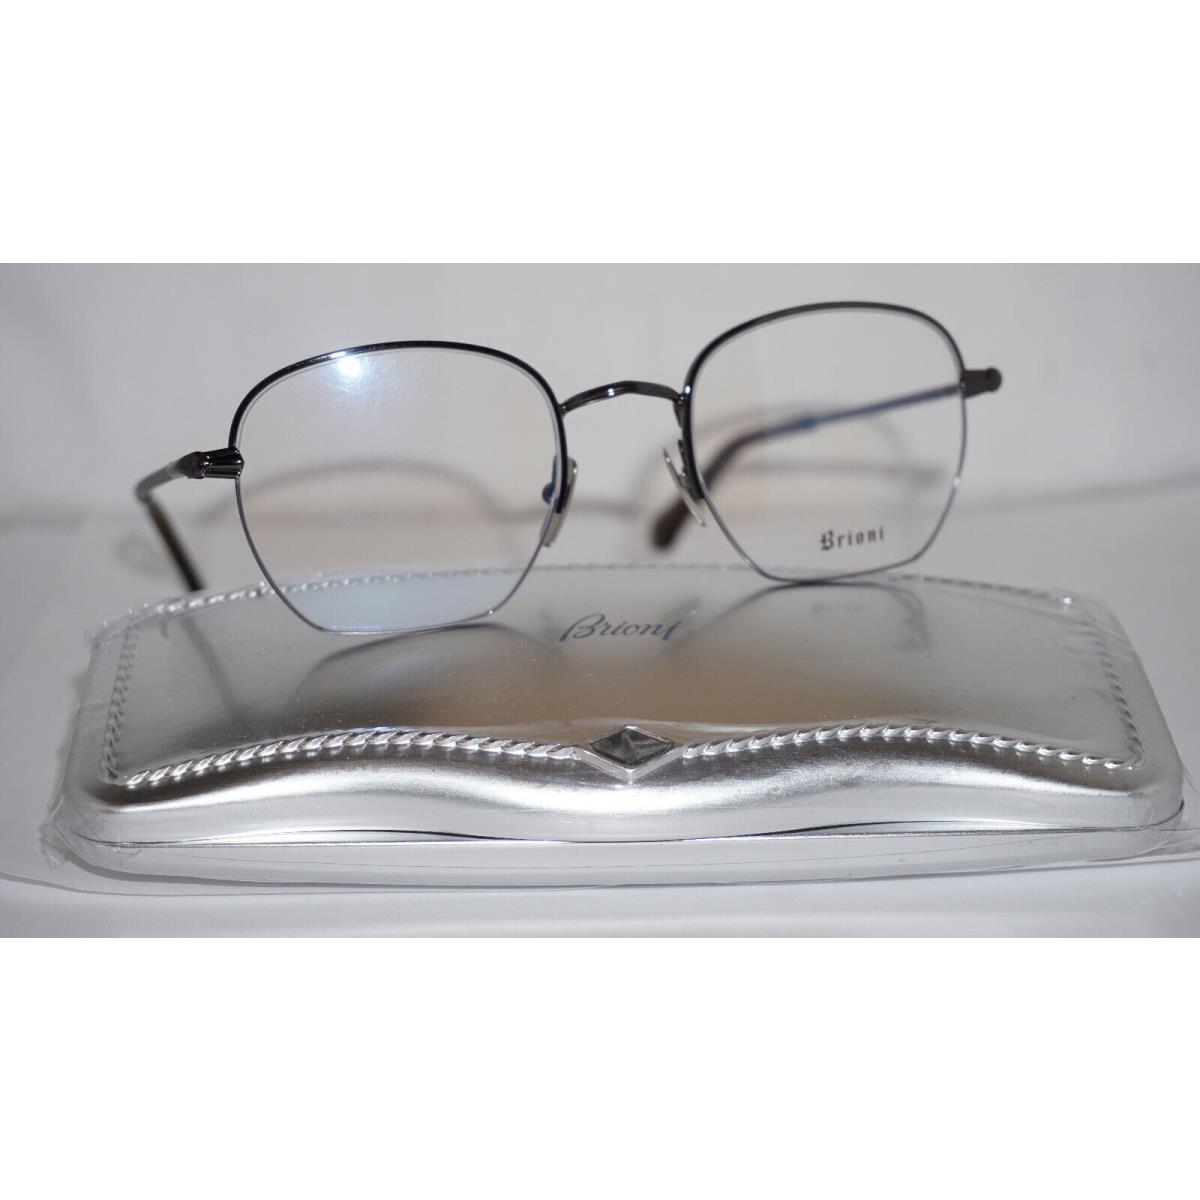 Brioni Eyeglasses RX Gunmetal Half Rim BR0027O 003 49 21 145